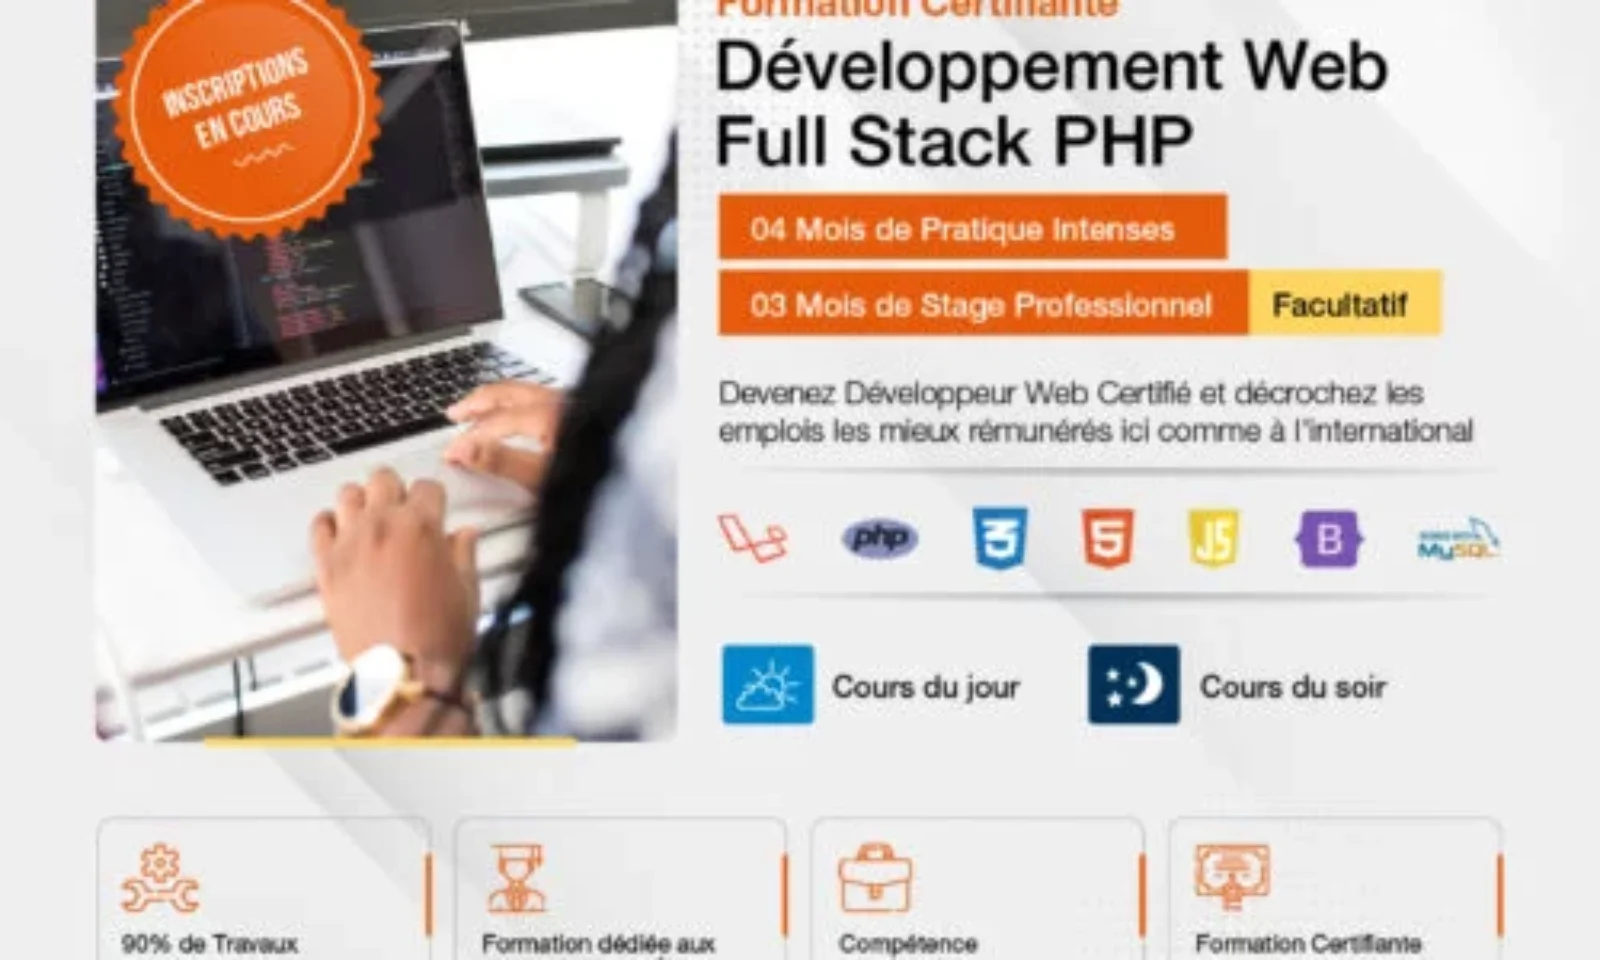 Formation en Développement Web Full Stack PHP